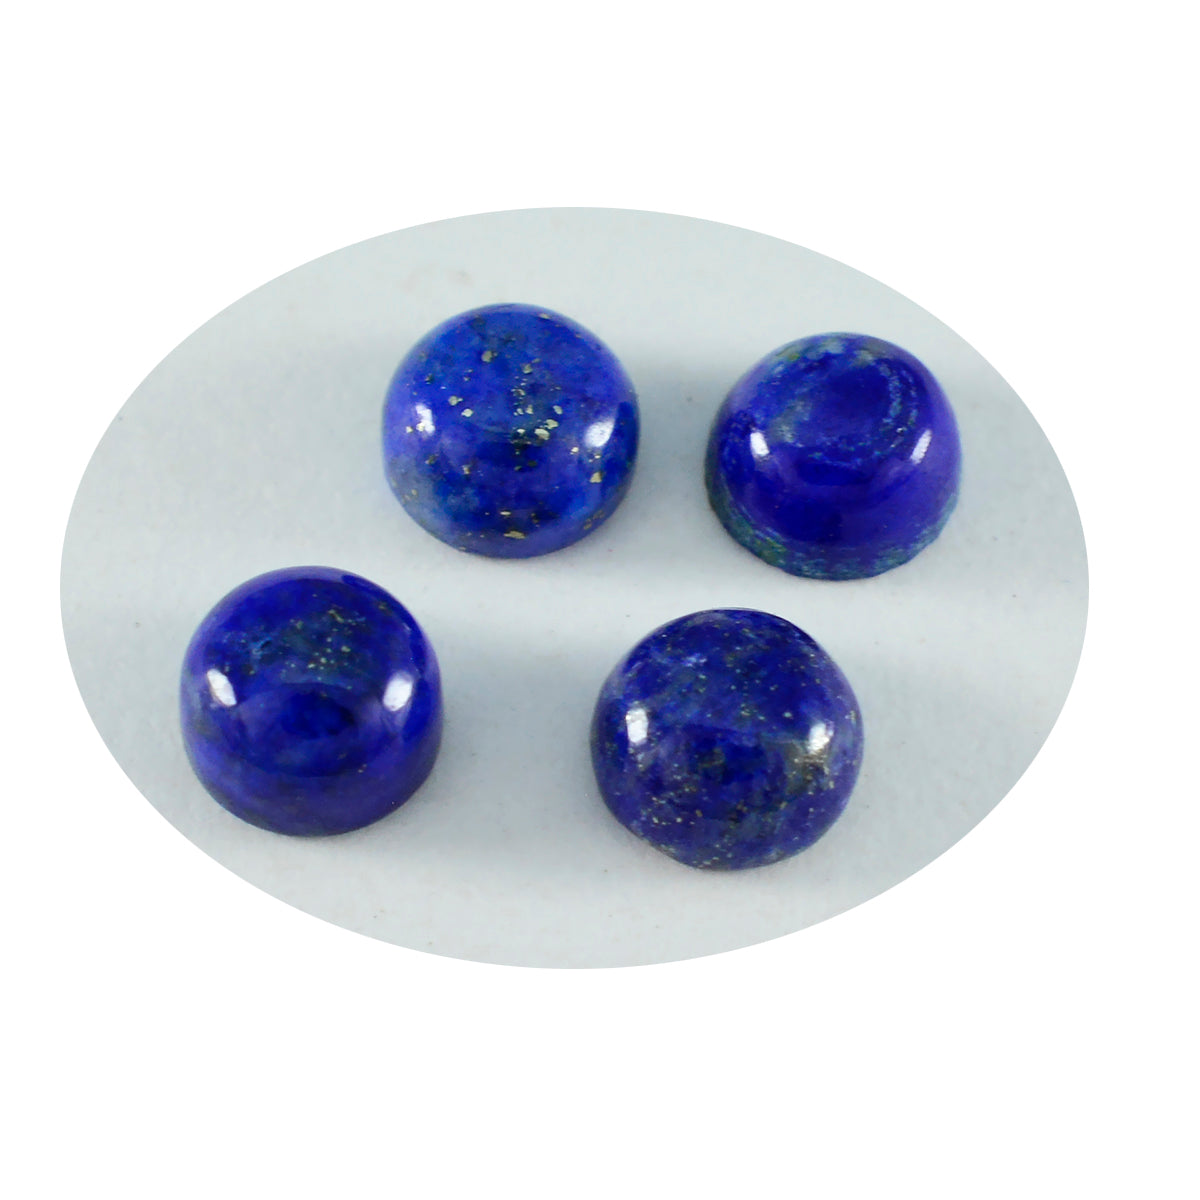 Riyogems 1PC Blauwe Lapis Lazuli Cabochon 6x6 mm Ronde Vorm mooie kwaliteit Losse Edelstenen